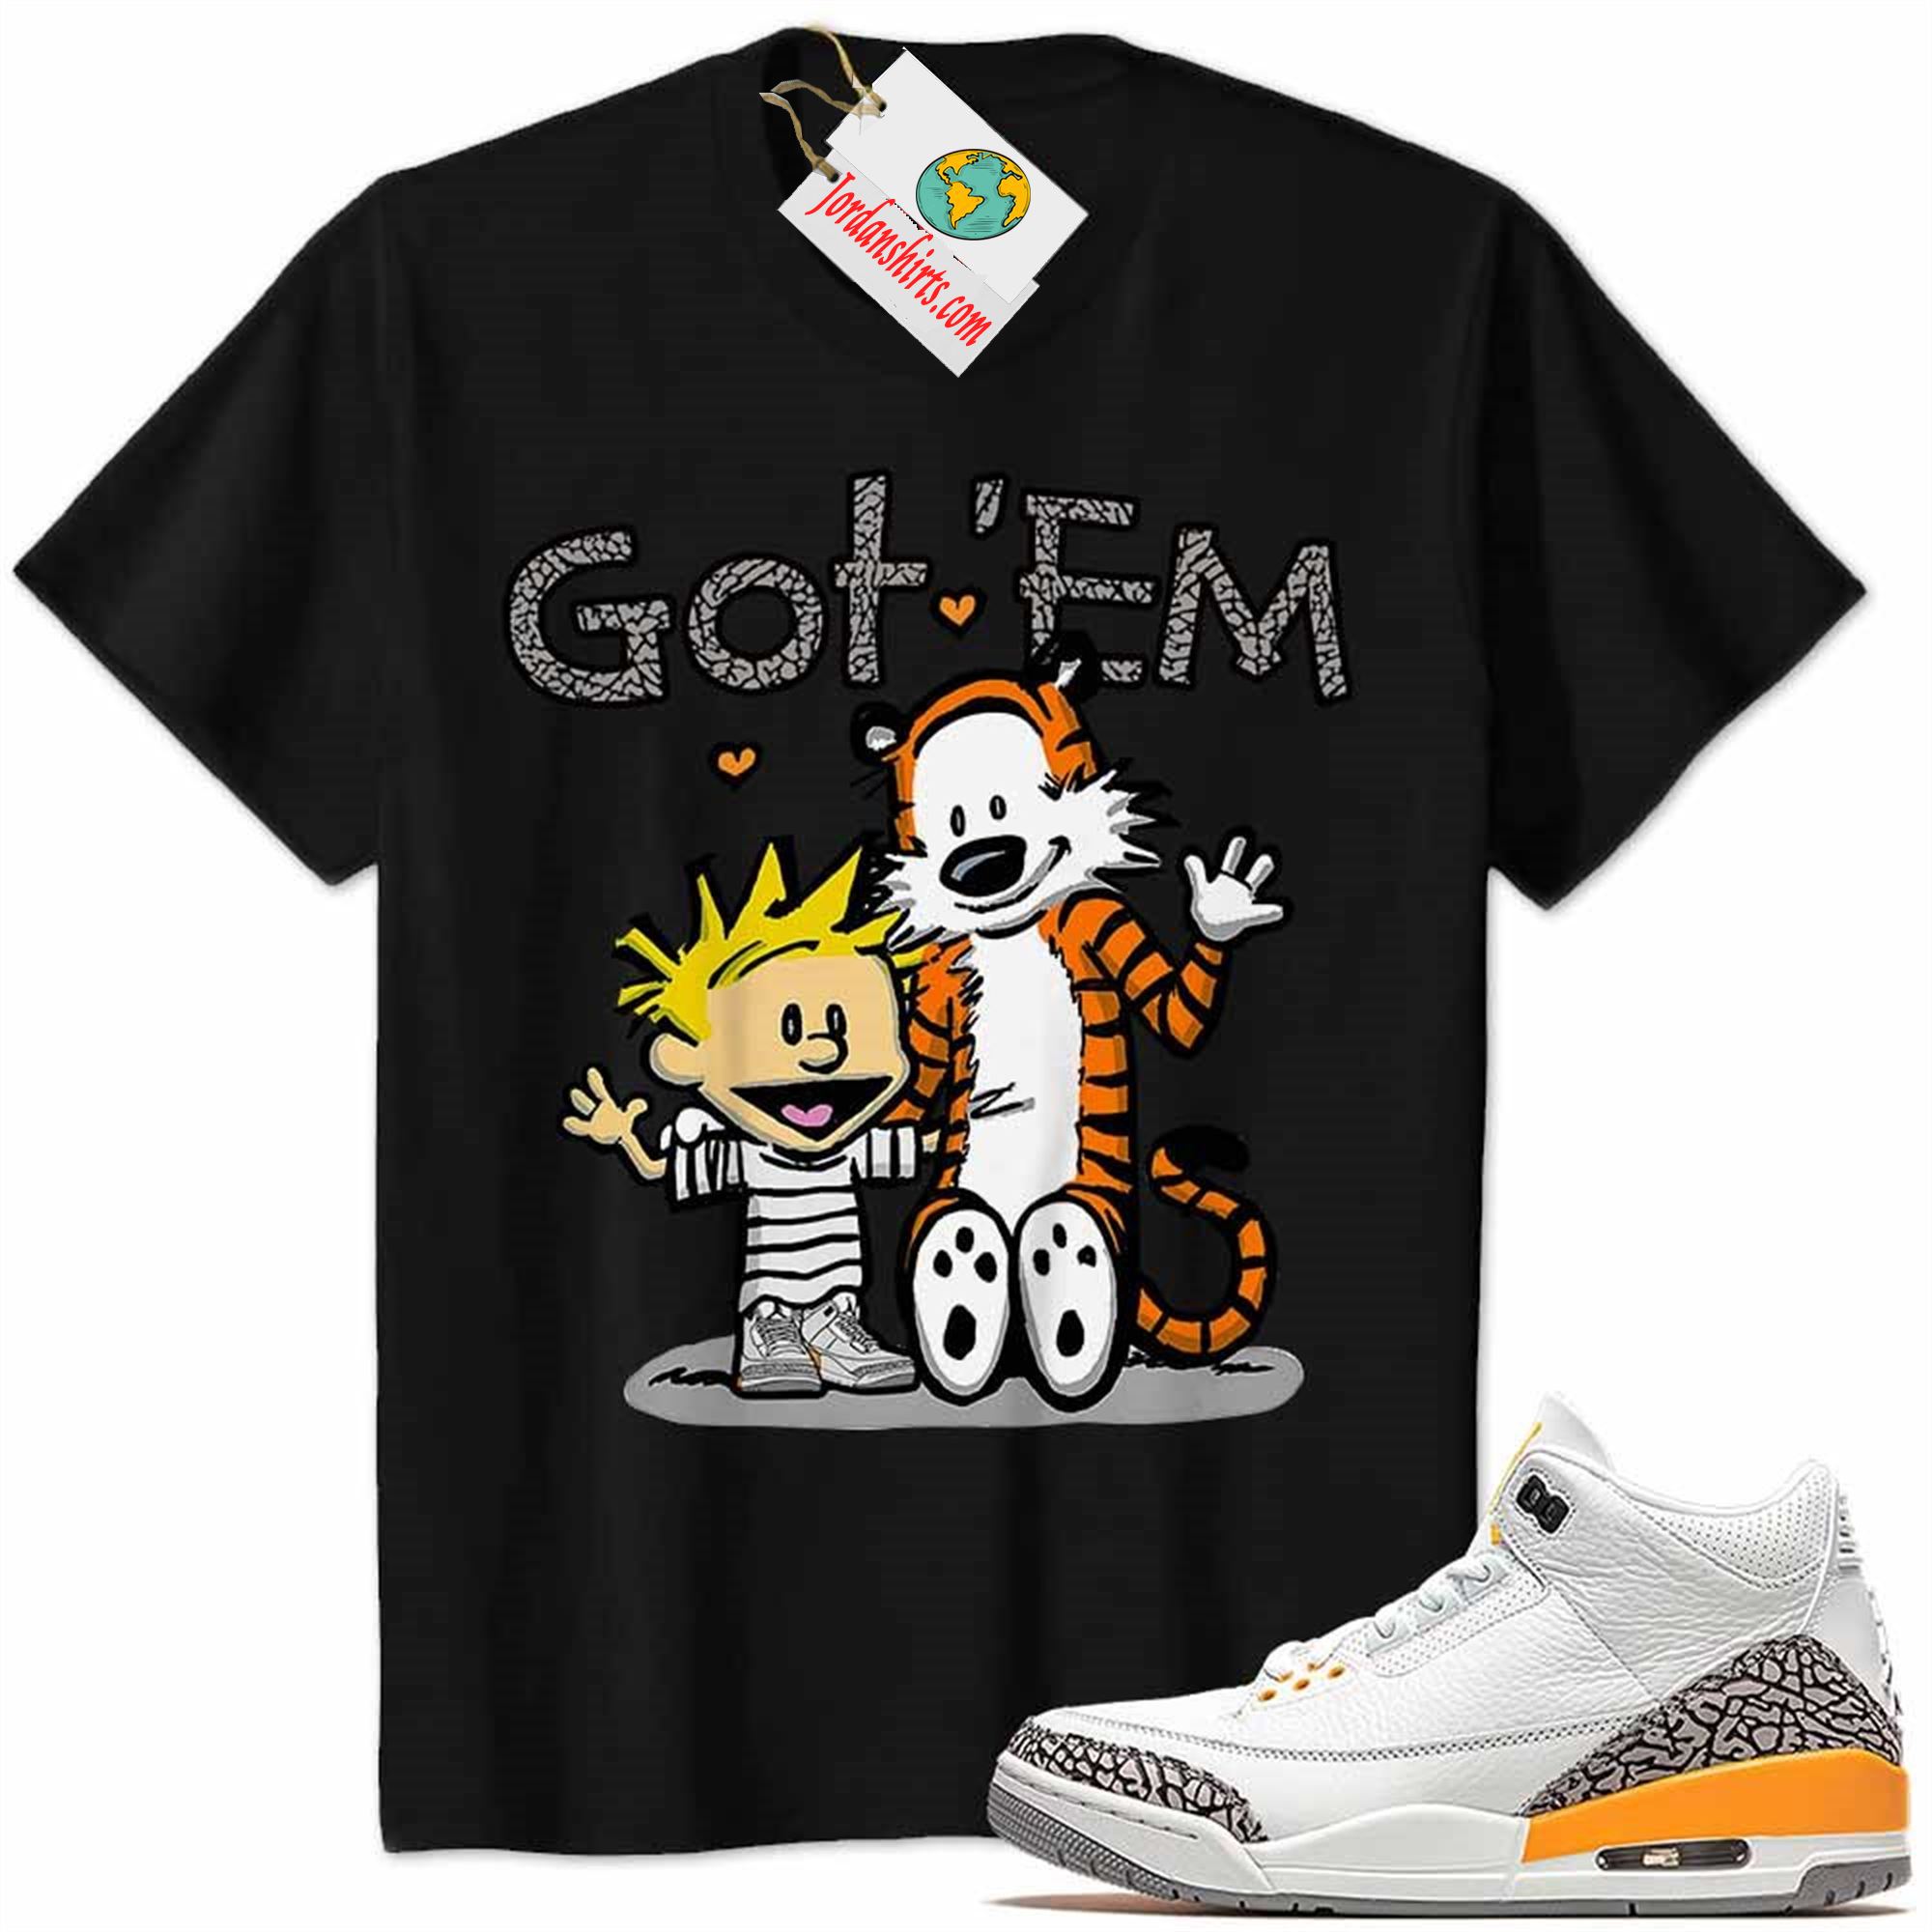 Jordan 3 Shirt, Jordan 3 Laser Orange Shirt Calvin And Hobbes Got Em Black Plus Size Up To 5xl